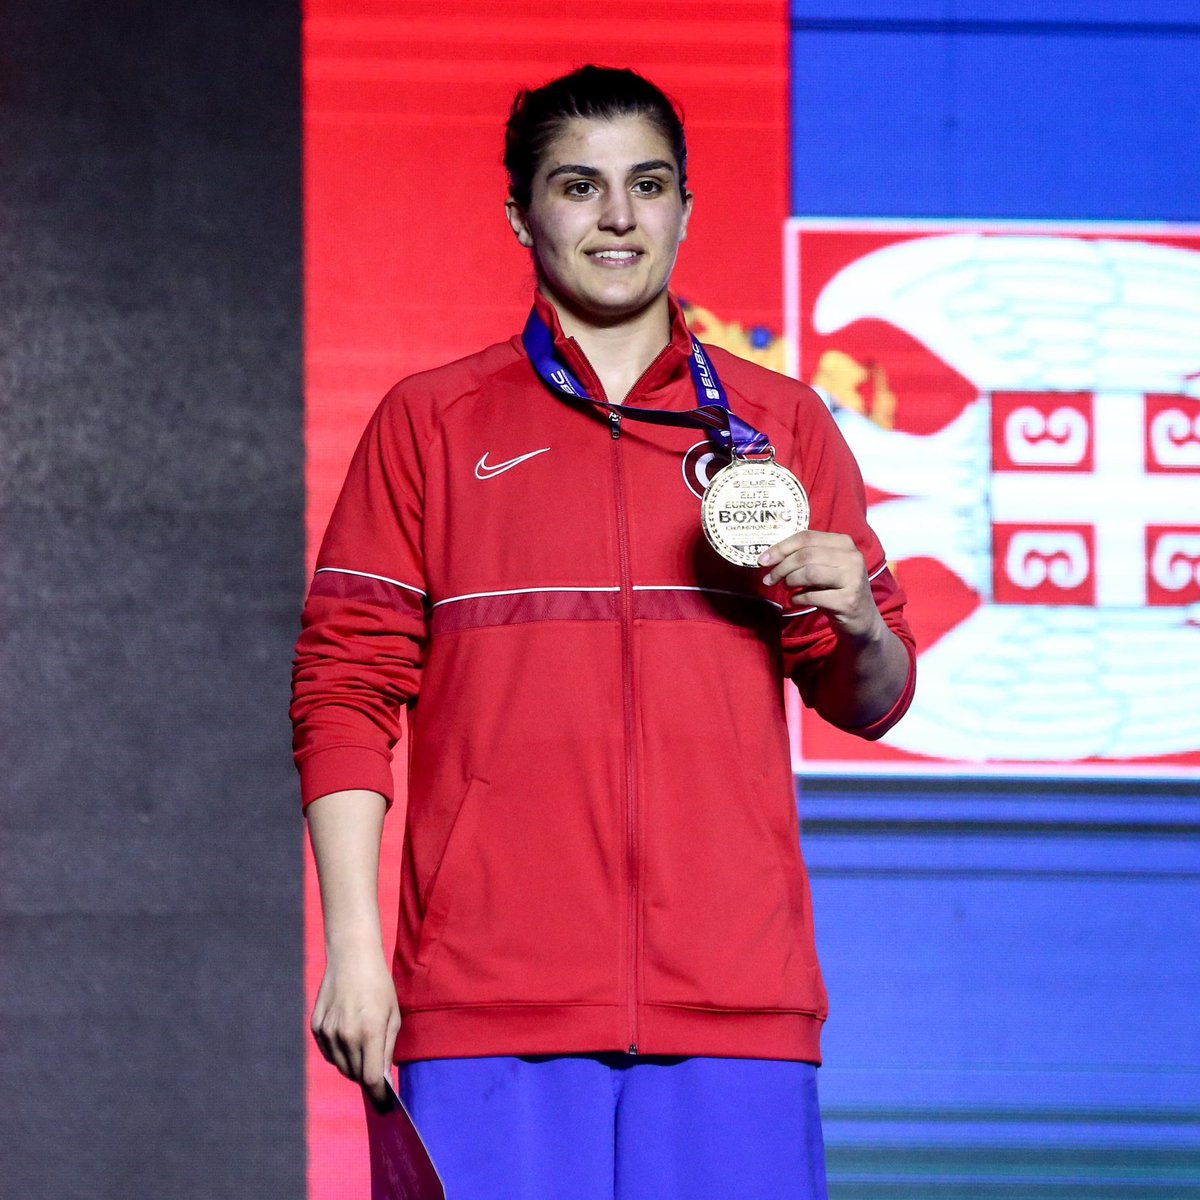 Sırbistan’dan 2 madalya ile dönüyoruz🥇🥇🥊

Avrupa Boks Şampiyonası'nda altın madalya kazanan milli boksörlerimiz Buse Naz Çakıroğlu ve Busenaz Sürmeneli'yi tebrik ediyor, milletçe bizleri gururlandıran milli sporcularımızın başarılarının devamını diliyorum🇹🇷